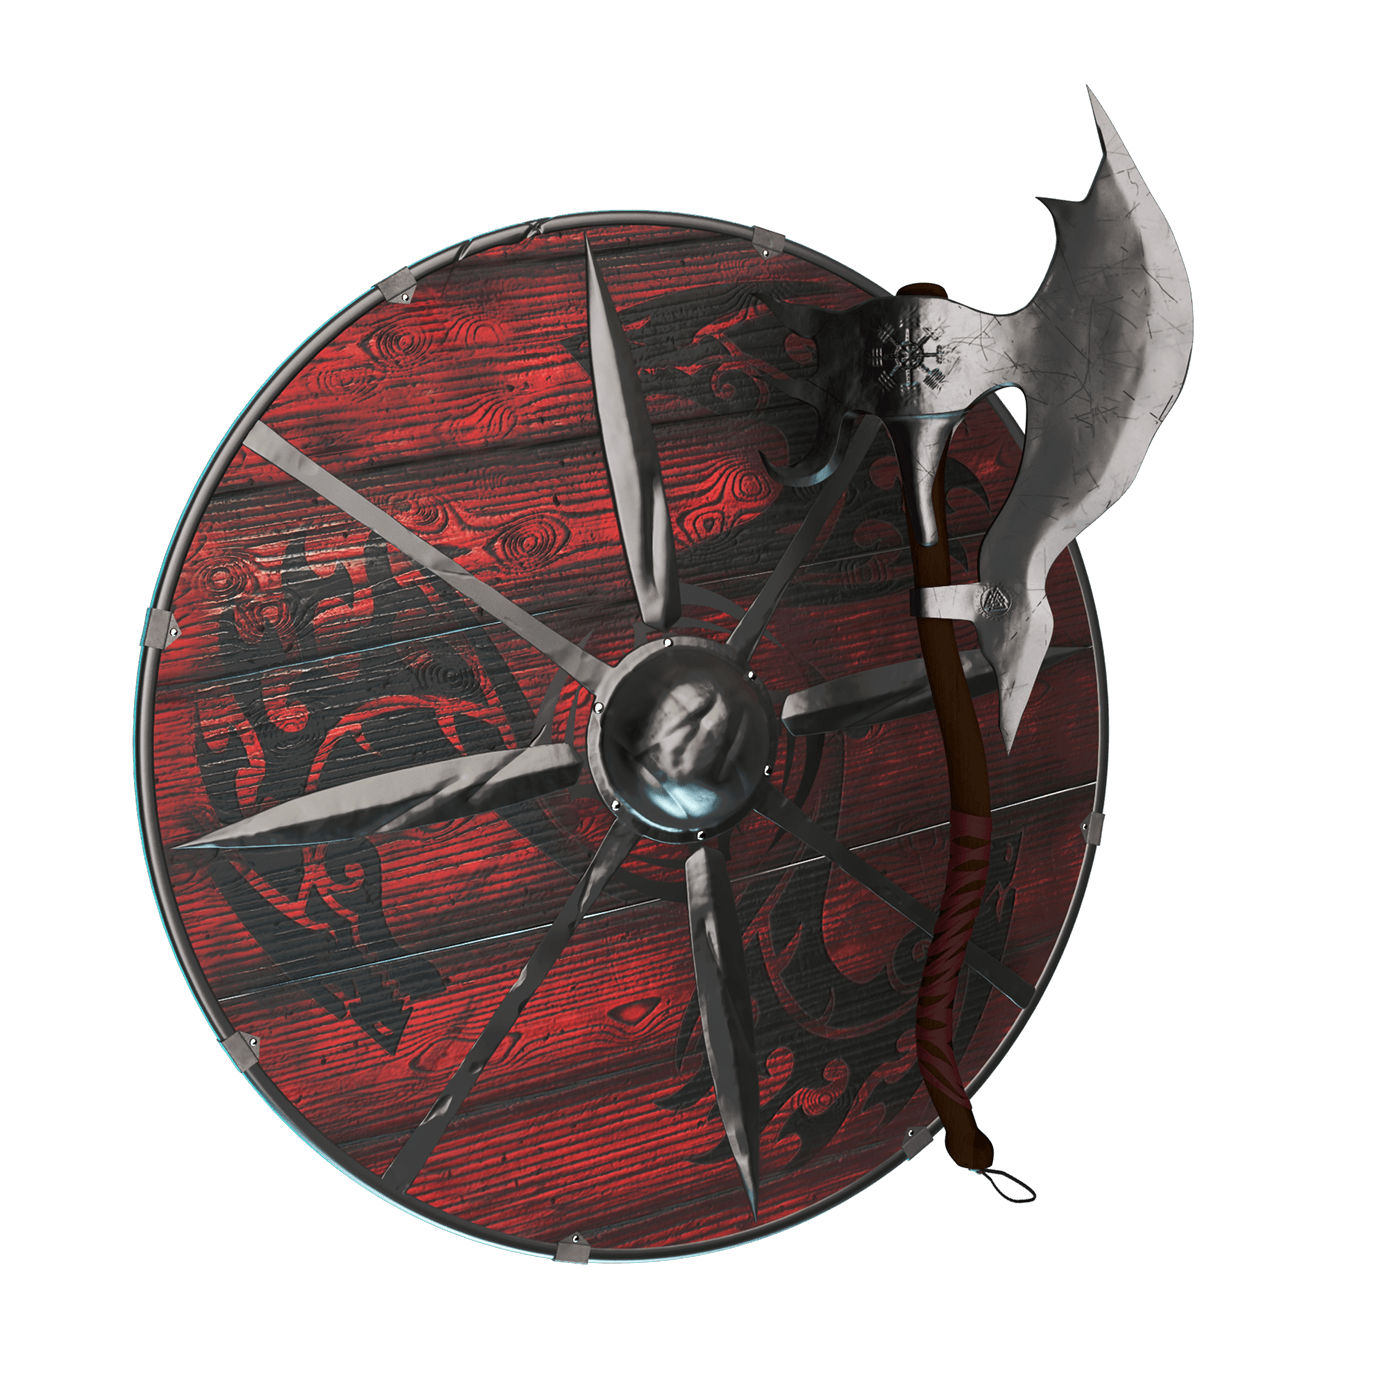 axe shield Weapon viking blender 3D Render mythology Celtic Zbrush